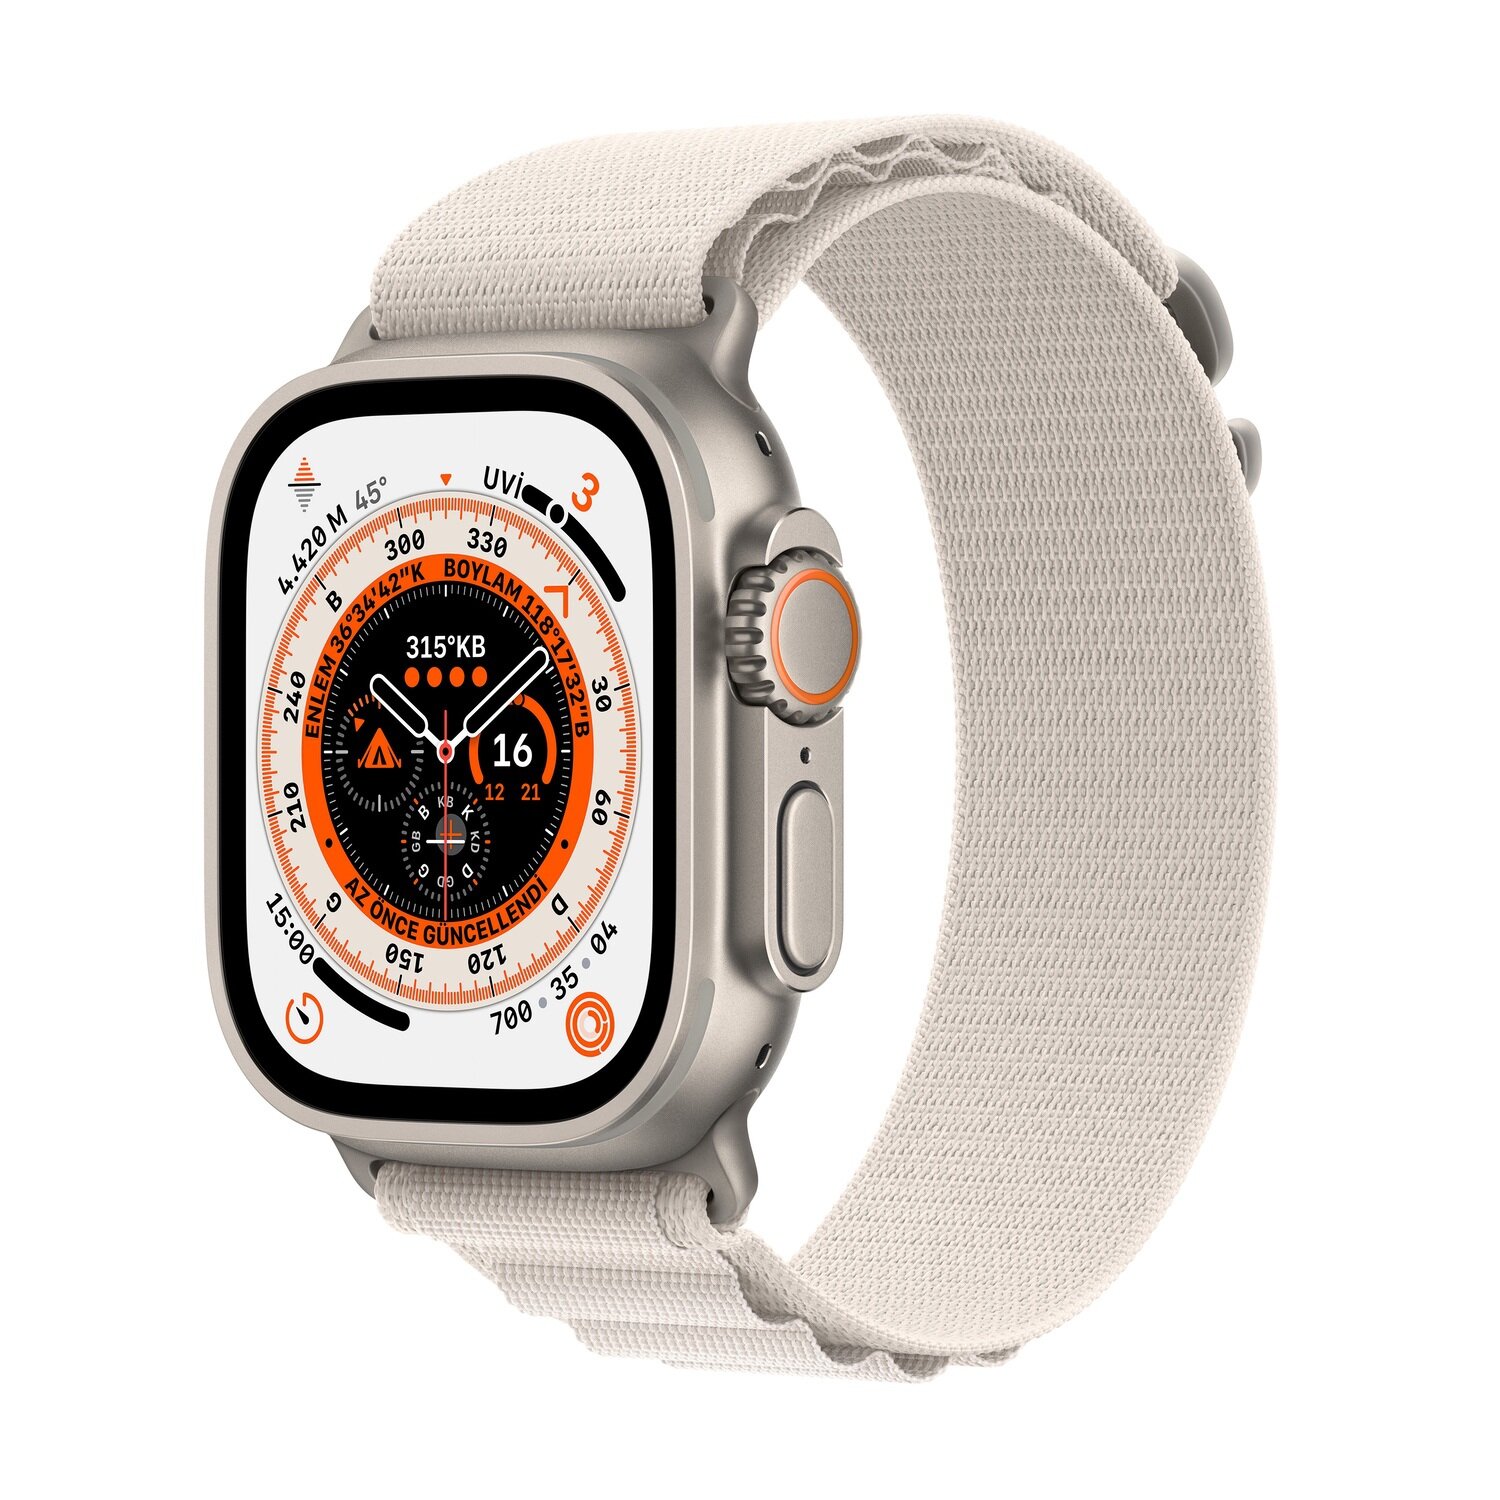 Watch　Alpine　Yıldız　Apple　Işığı　Cellular　Ultra　Troy　Estore　Titanyum　GPS　ve　Orta　Loop　Boy　49mm　Kasa